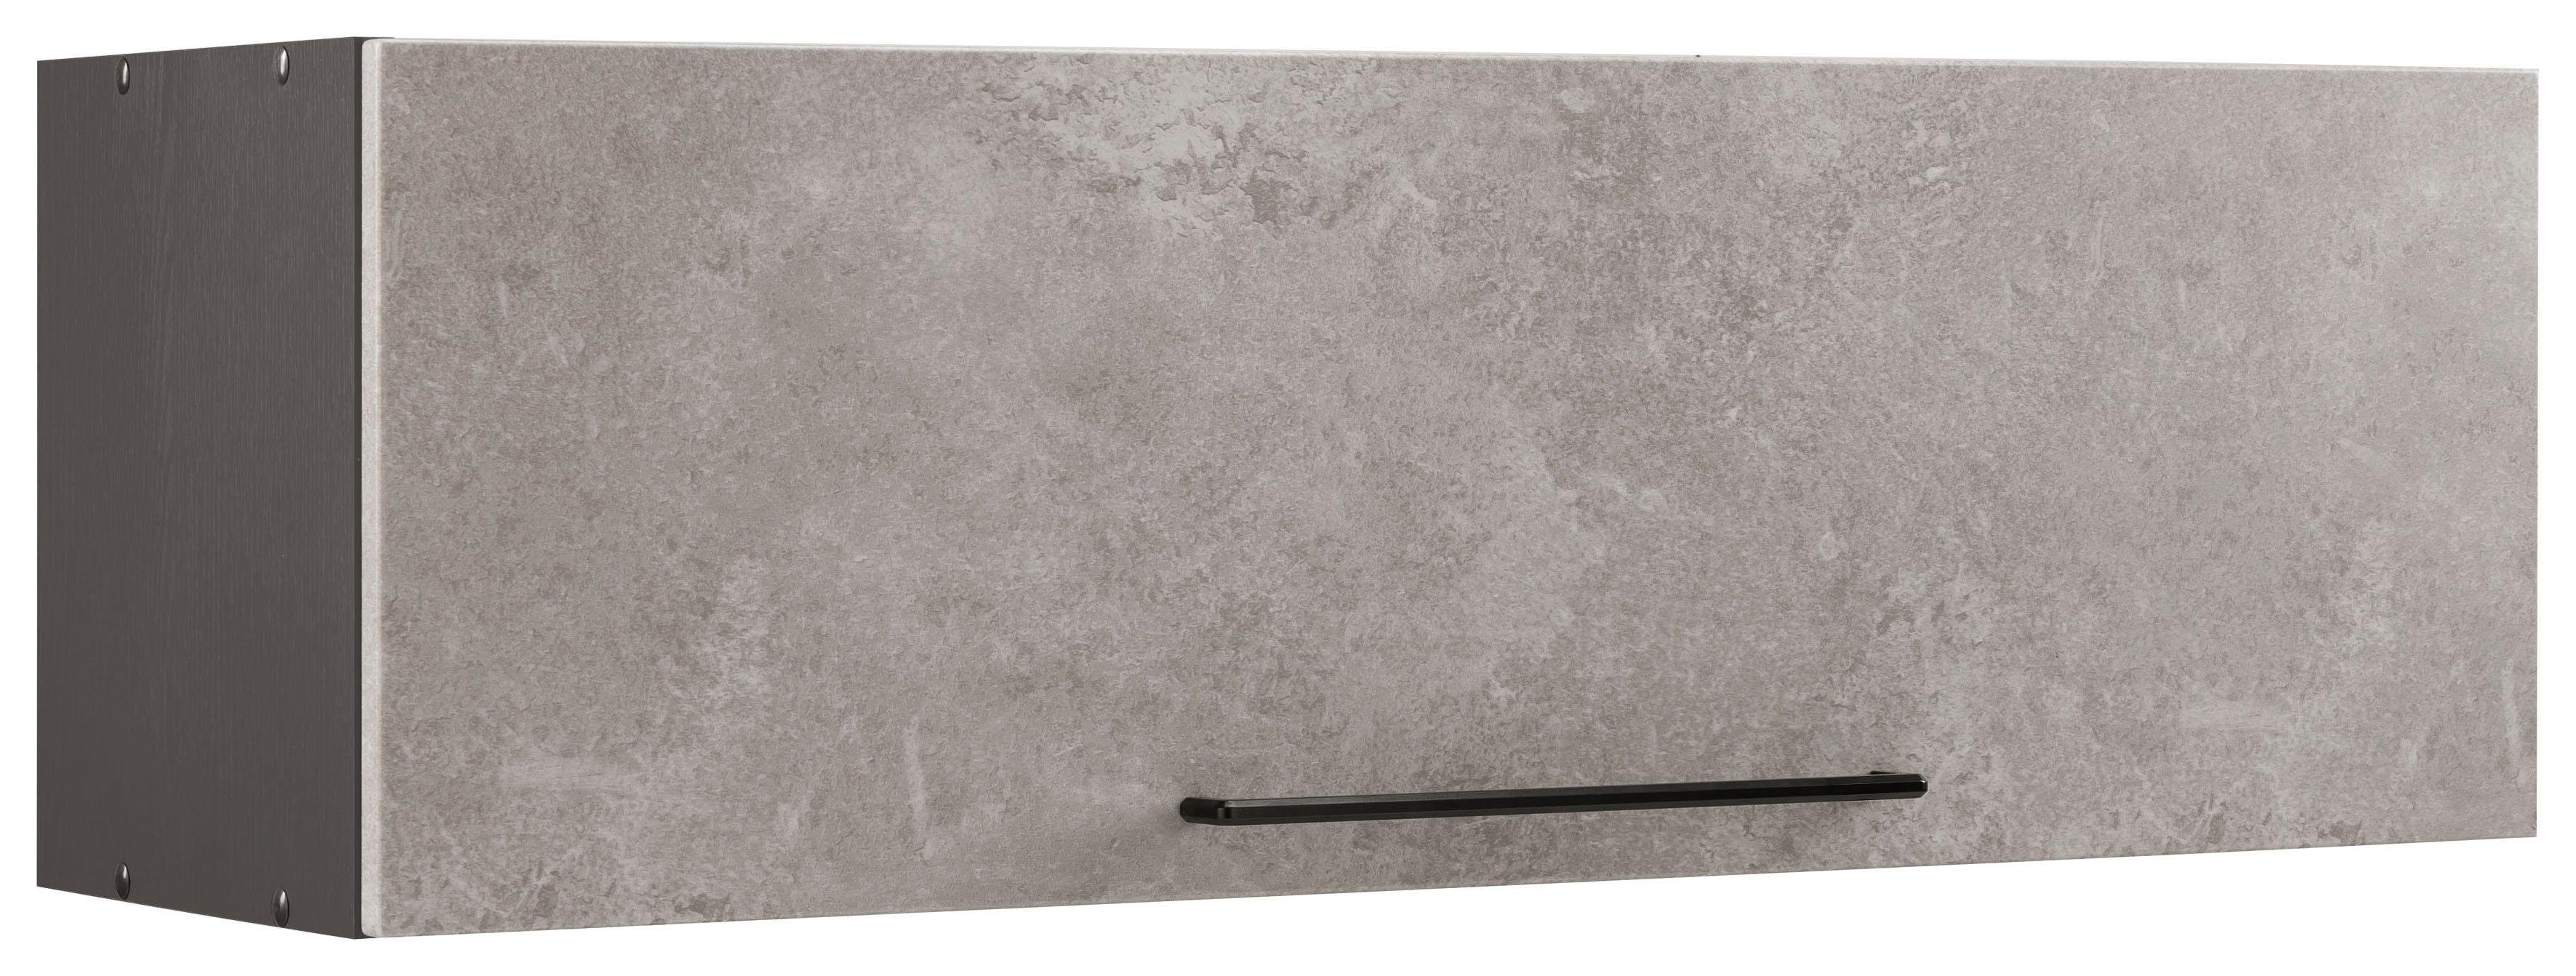 HELD MÖBEL Klapphängeschrank Tulsa 100 cm breit, mit 1 Klappe, schwarzer Metallgriff, MDF Front betonfarben hell | grafit | Hängeschränke